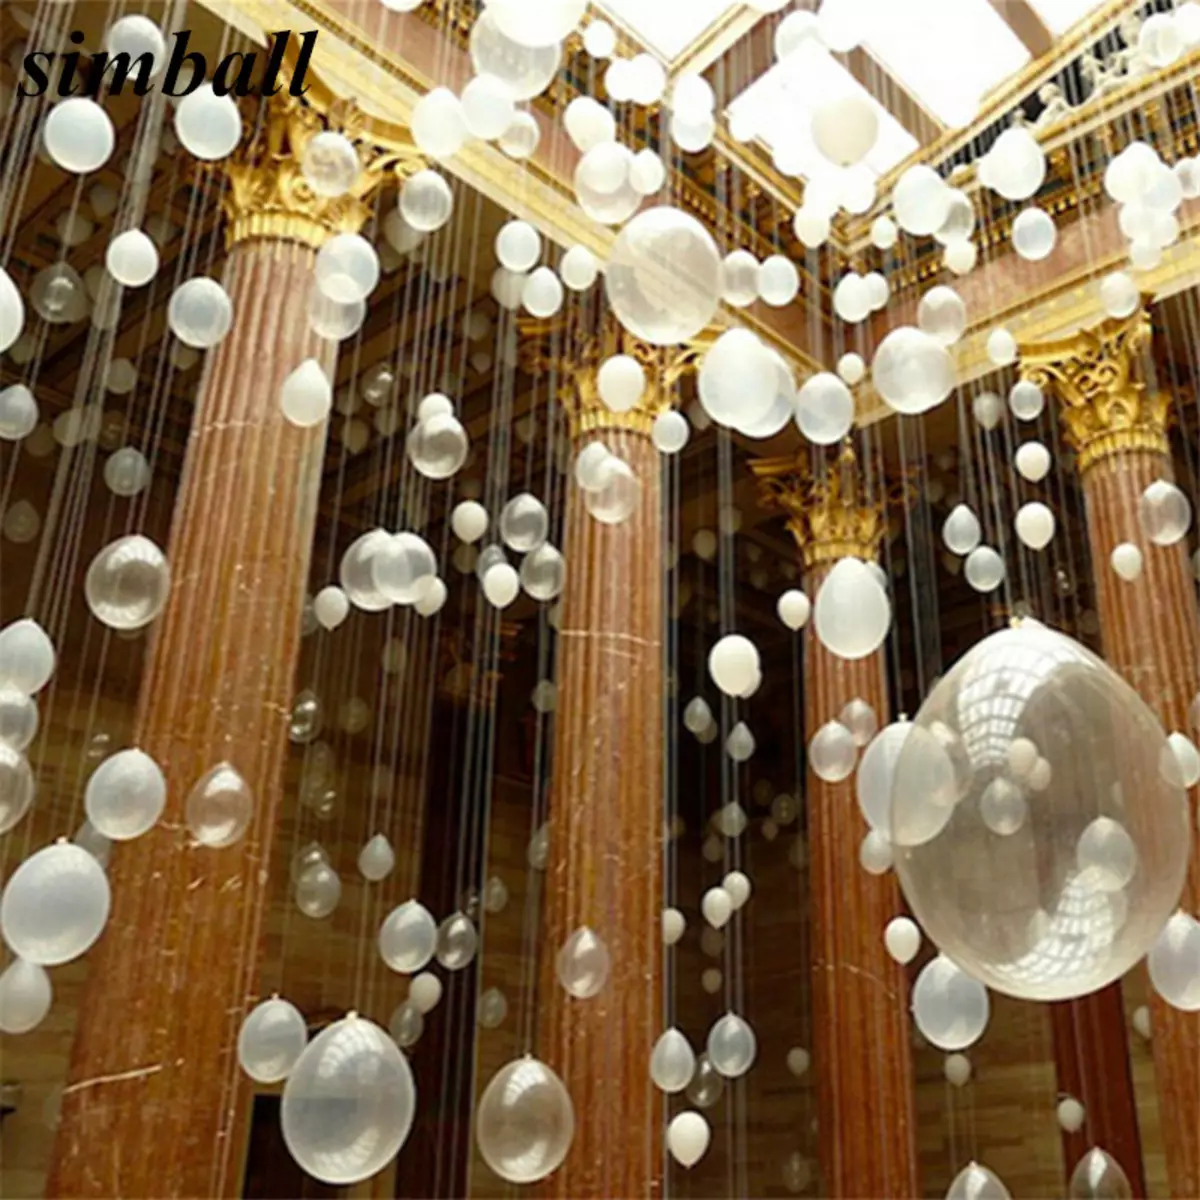 Zāles dekorēšana ar bumbiņām uz jubileju: sievietei un vīriešiem uz gadadienu 50 un 60, 30 un 35, 70 gadus veci un citos datumos ar baloniem 24641_52